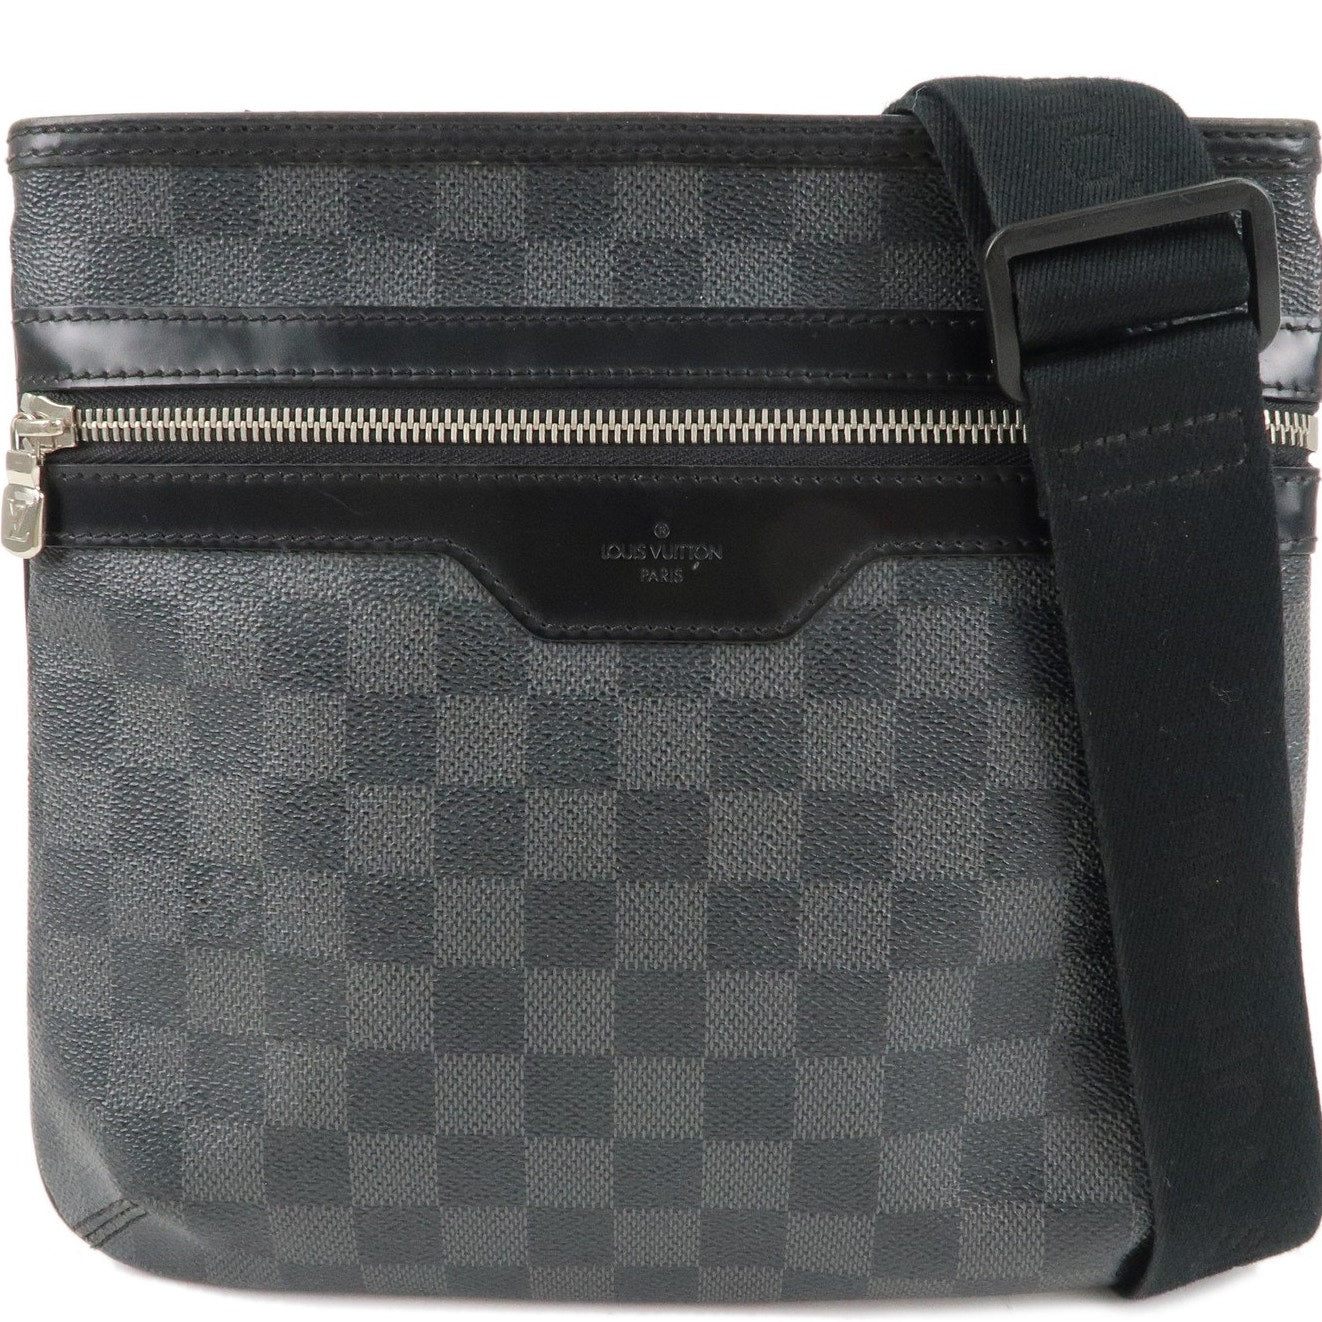 Authentic Louis Vuitton Damier Graphite Thomas Shoulder Bag